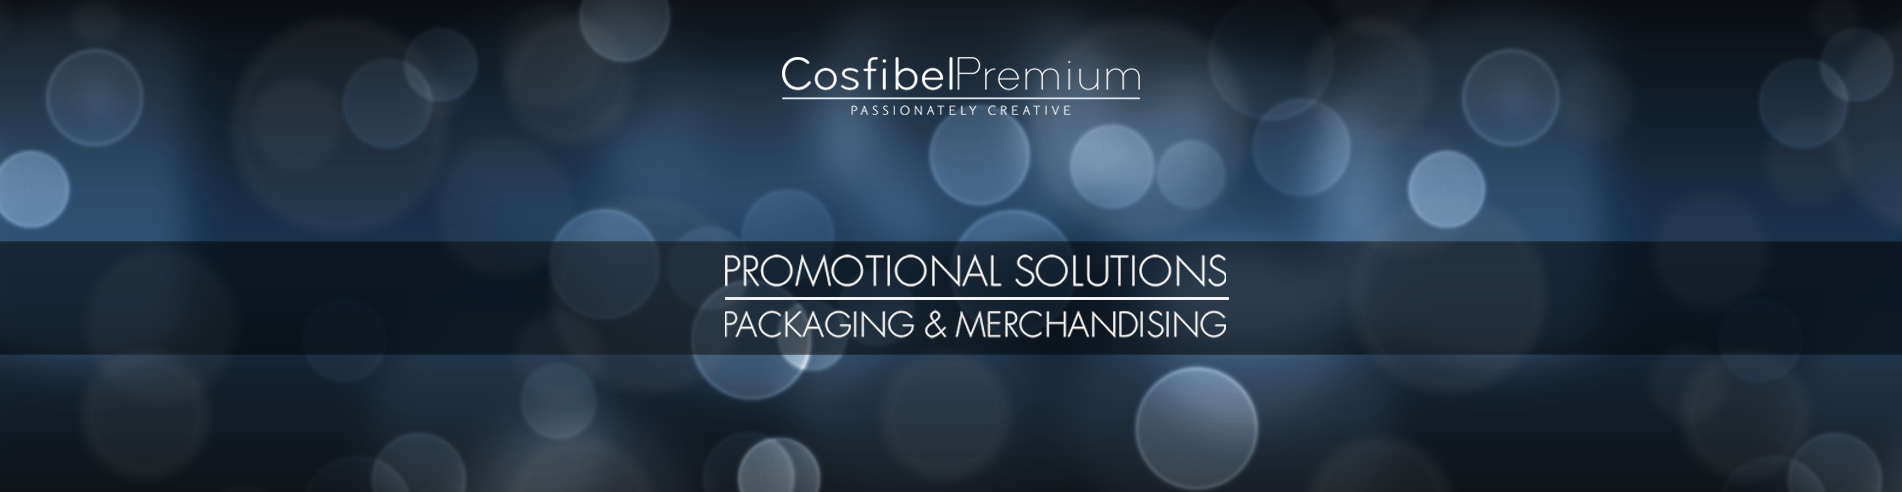 Cosfibel Premium